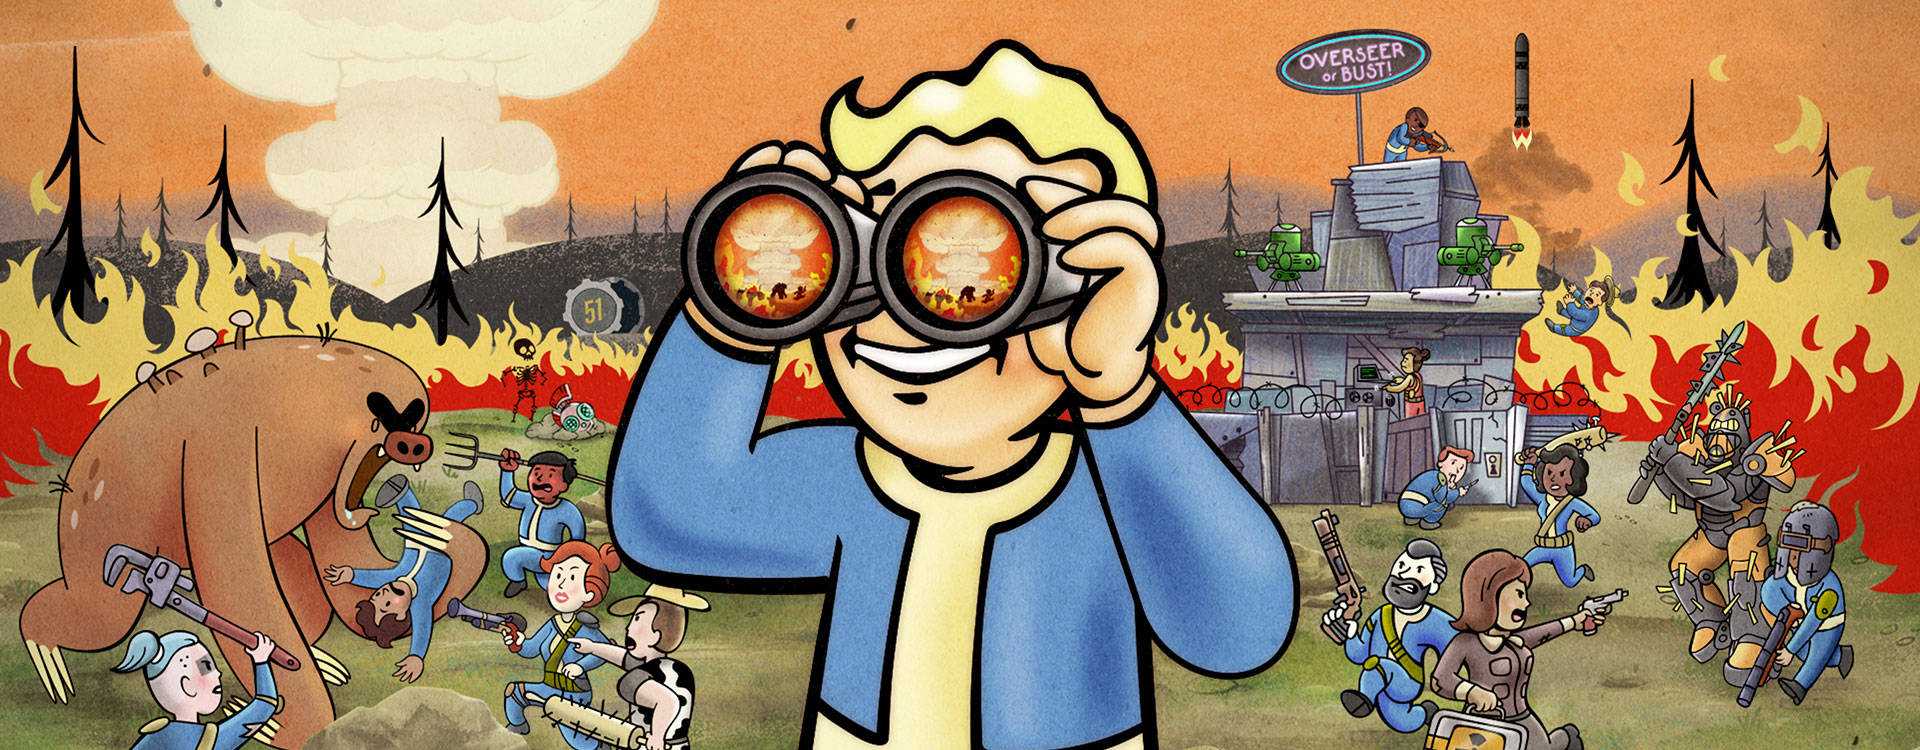 Bethesda macht weiter mit Fallout 76, auch wenn einige Kritiker fordern: „Hört auf!“